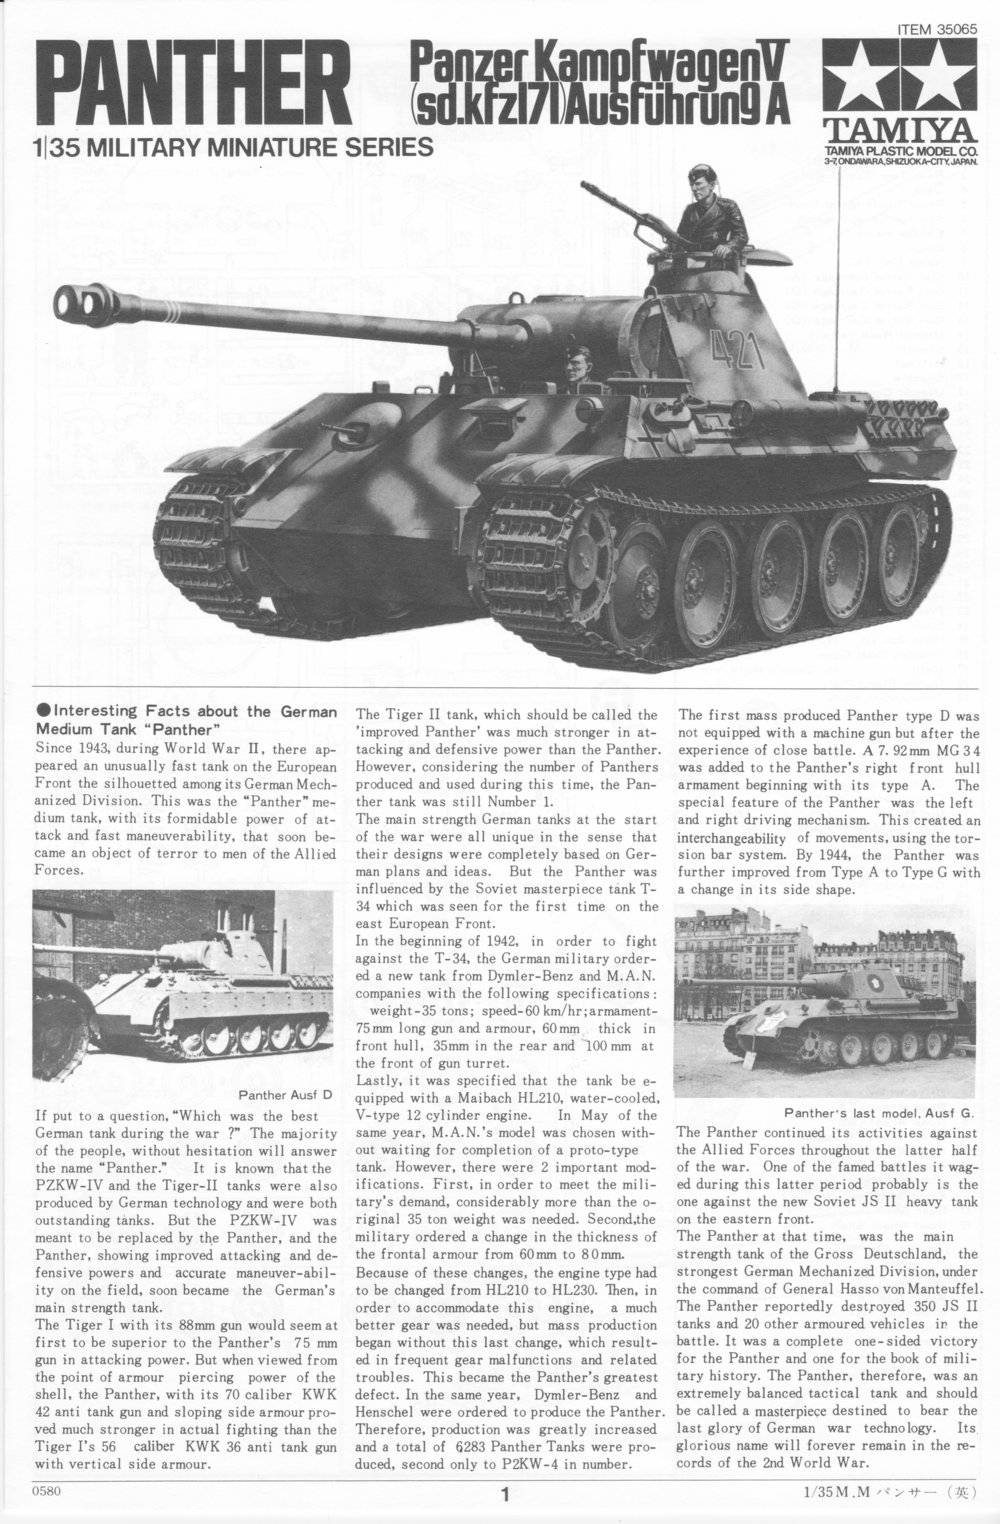 German Panther Ausf.A Medium Tank  TAMIYA 1/35 plastic model kit 35065